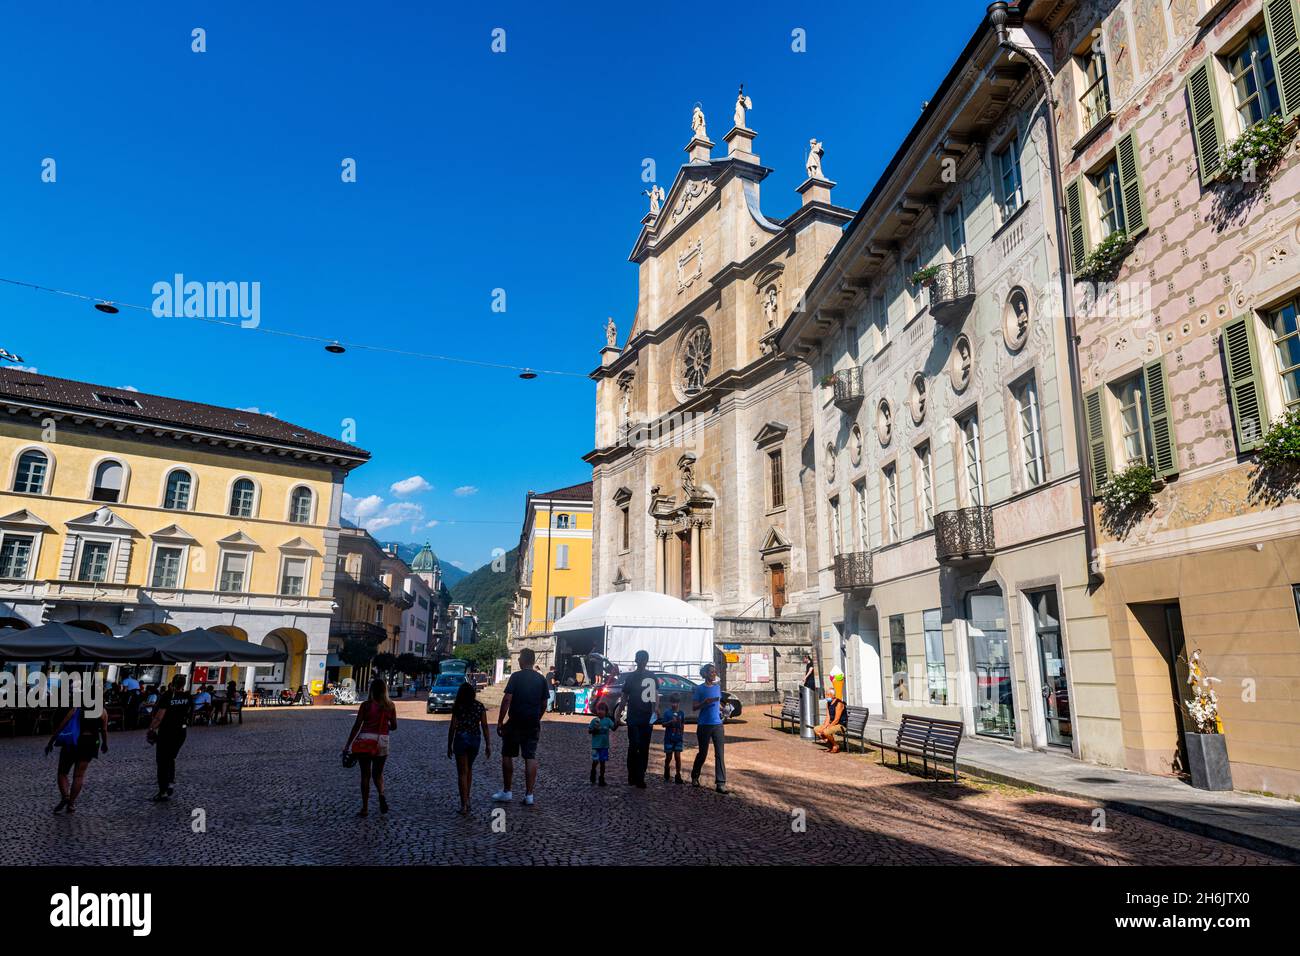 Centre ville de Bellinzona, site classé au patrimoine mondial de l'UNESCO, trois châteaux de Bellinzona, Tessin, Suisse, Europe Banque D'Images